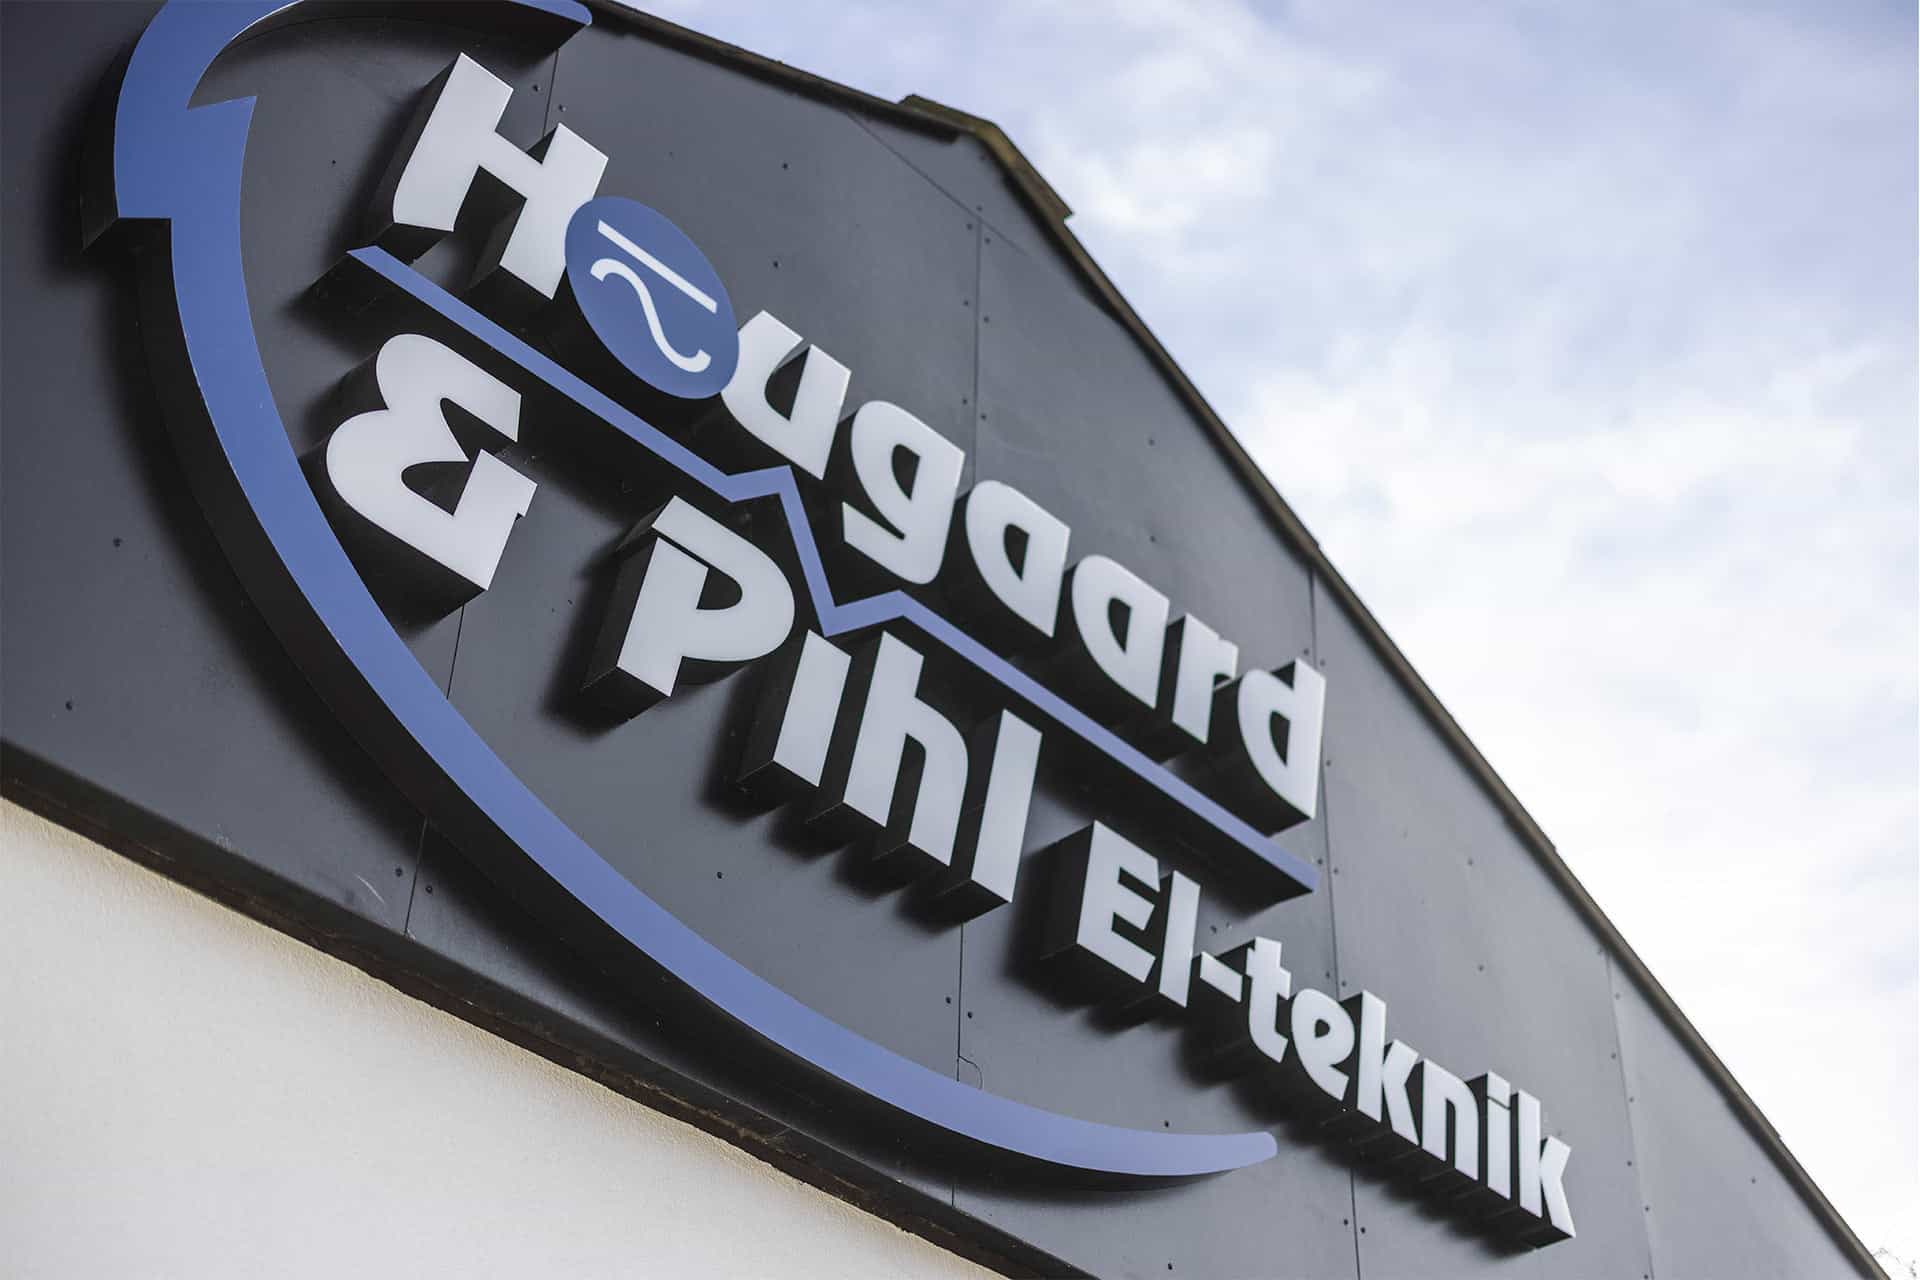 Hougaard & pihl el-teknik facadeskilt